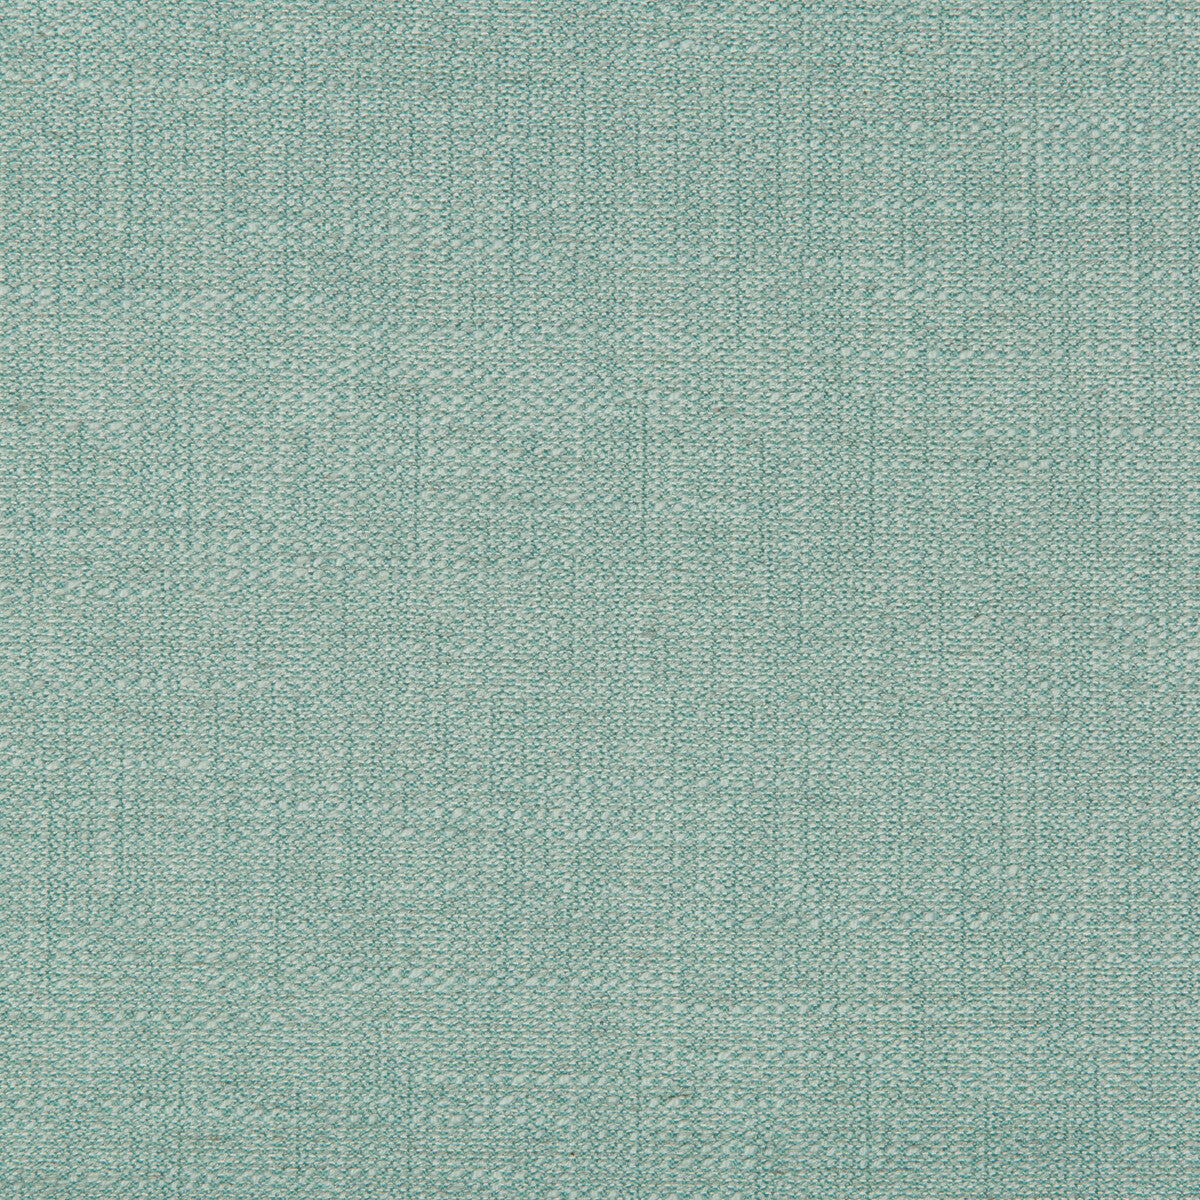 Kravet Basics fabric in 35292-135 color - pattern 35292.135.0 - by Kravet Basics